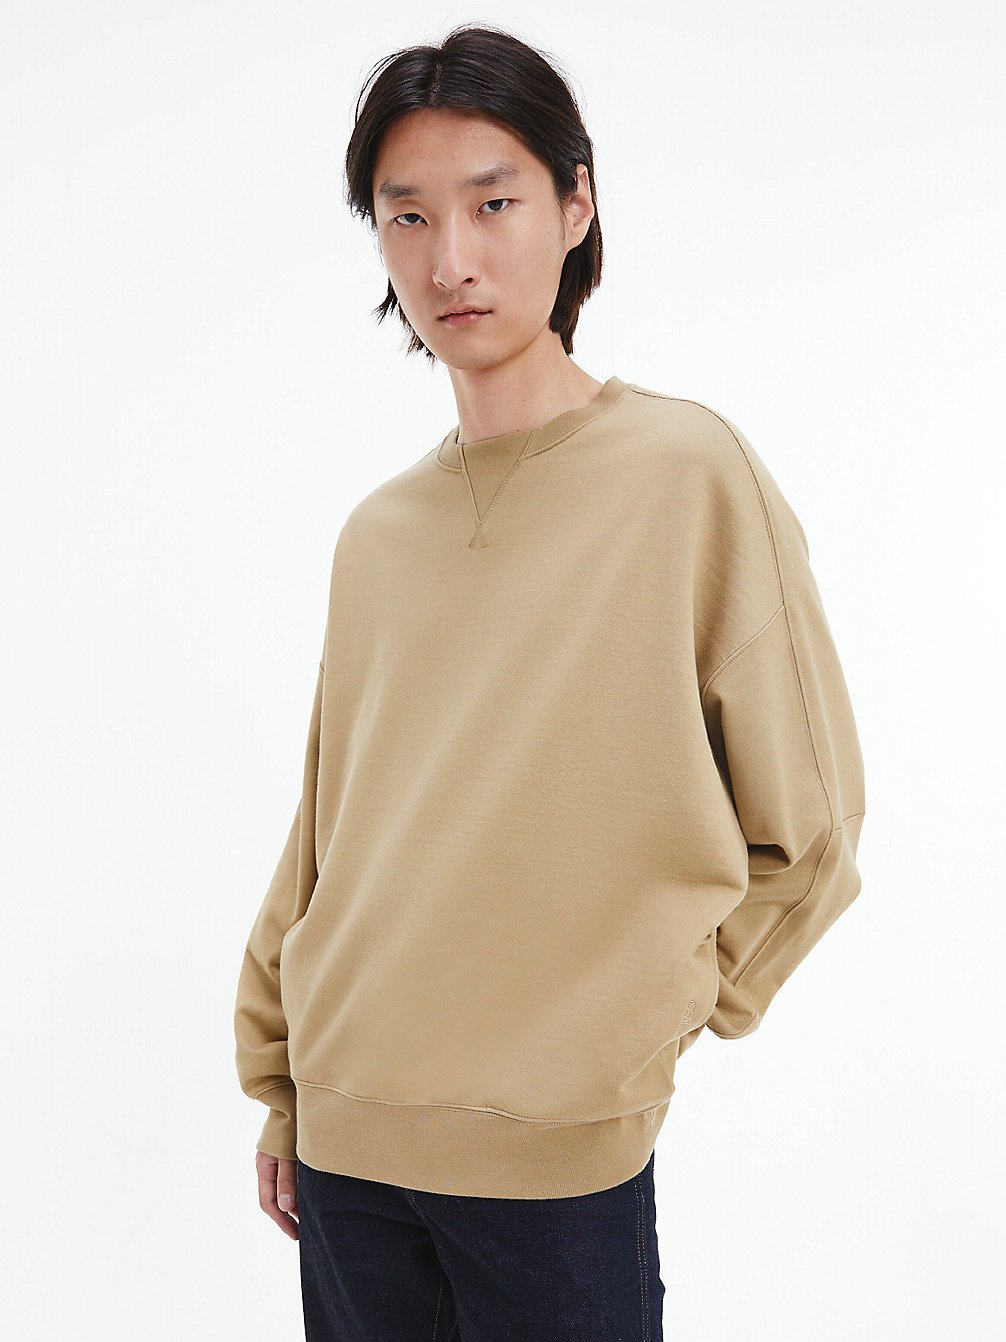 NETTLE > Unisex Relaxed Sweatshirt - CK Standards > undefined unisex - Calvin Klein